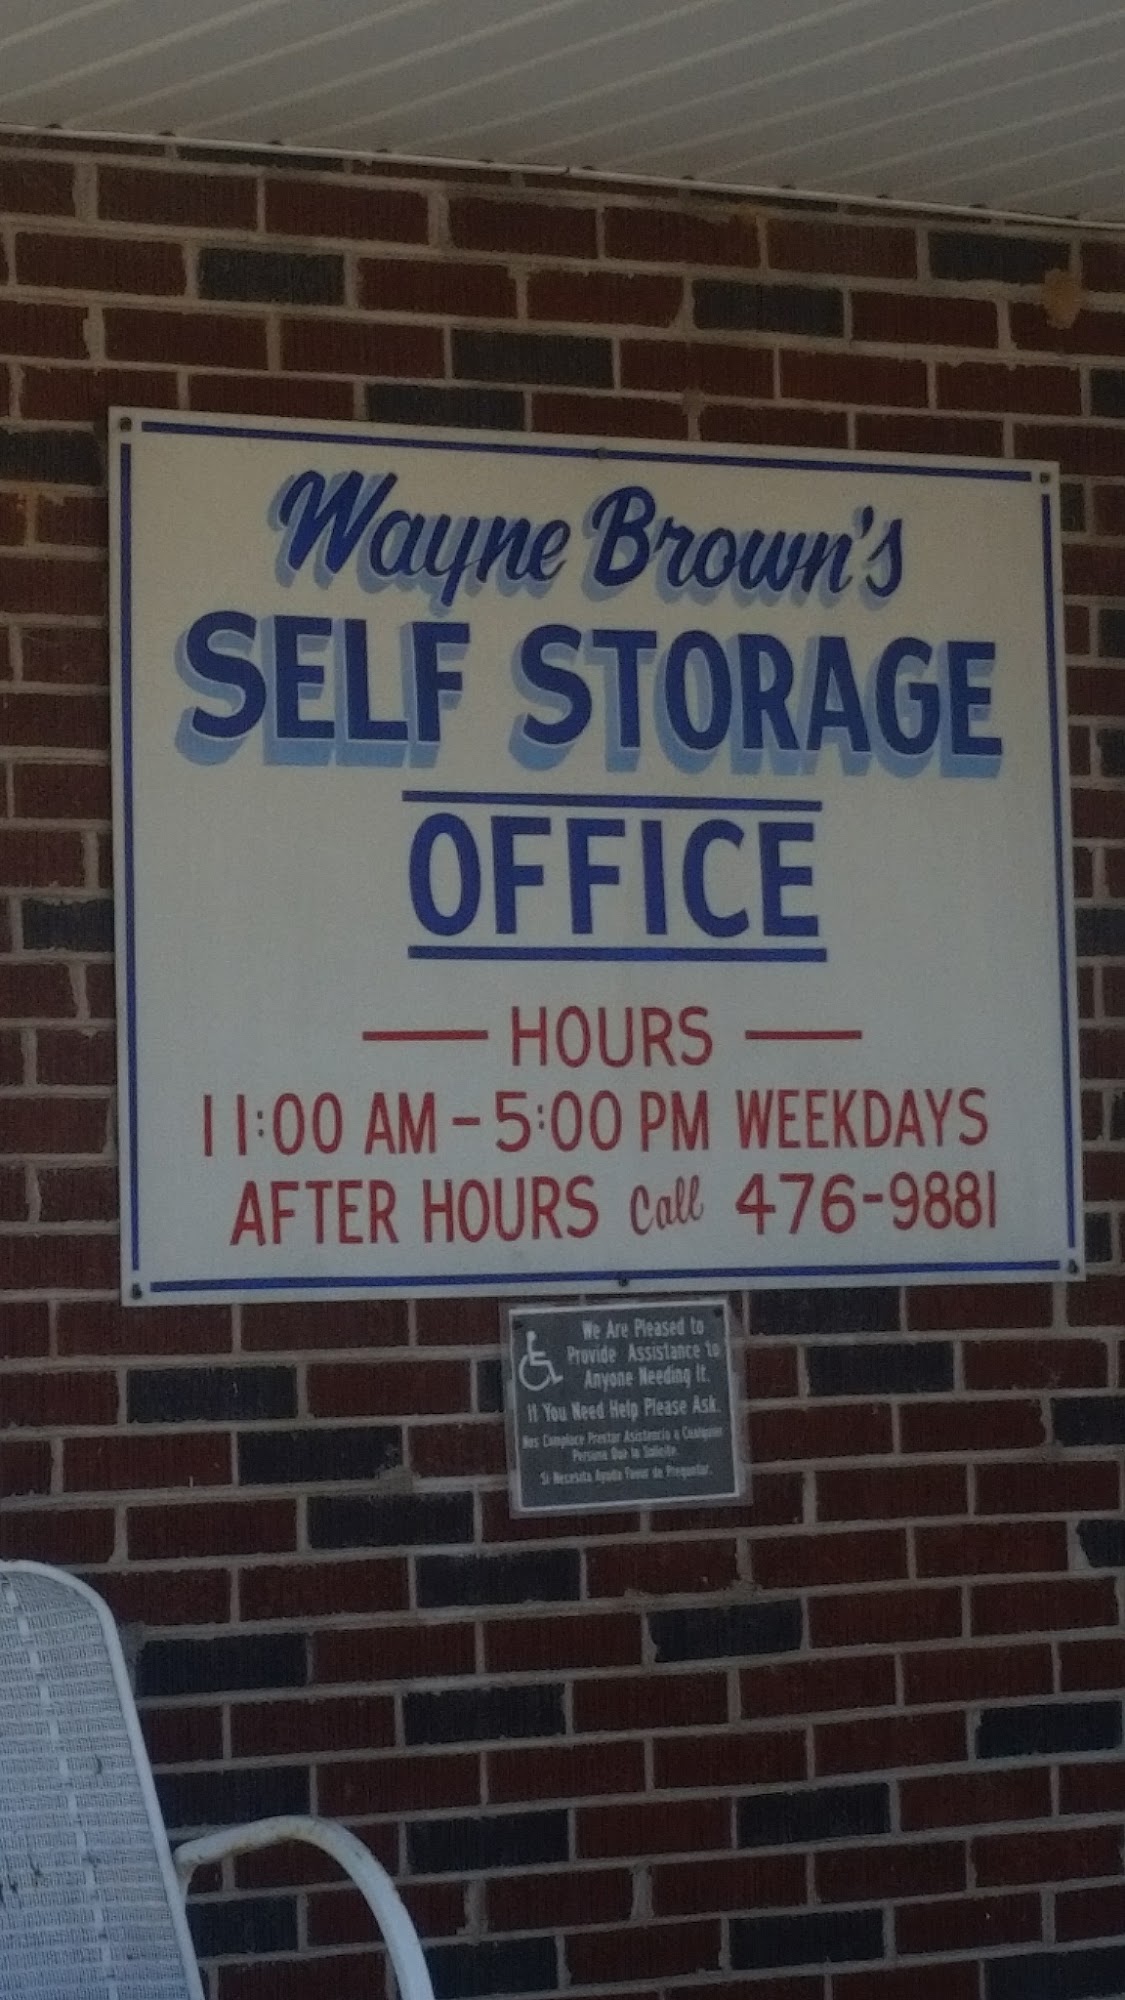 Wayne Brown's Self Storage